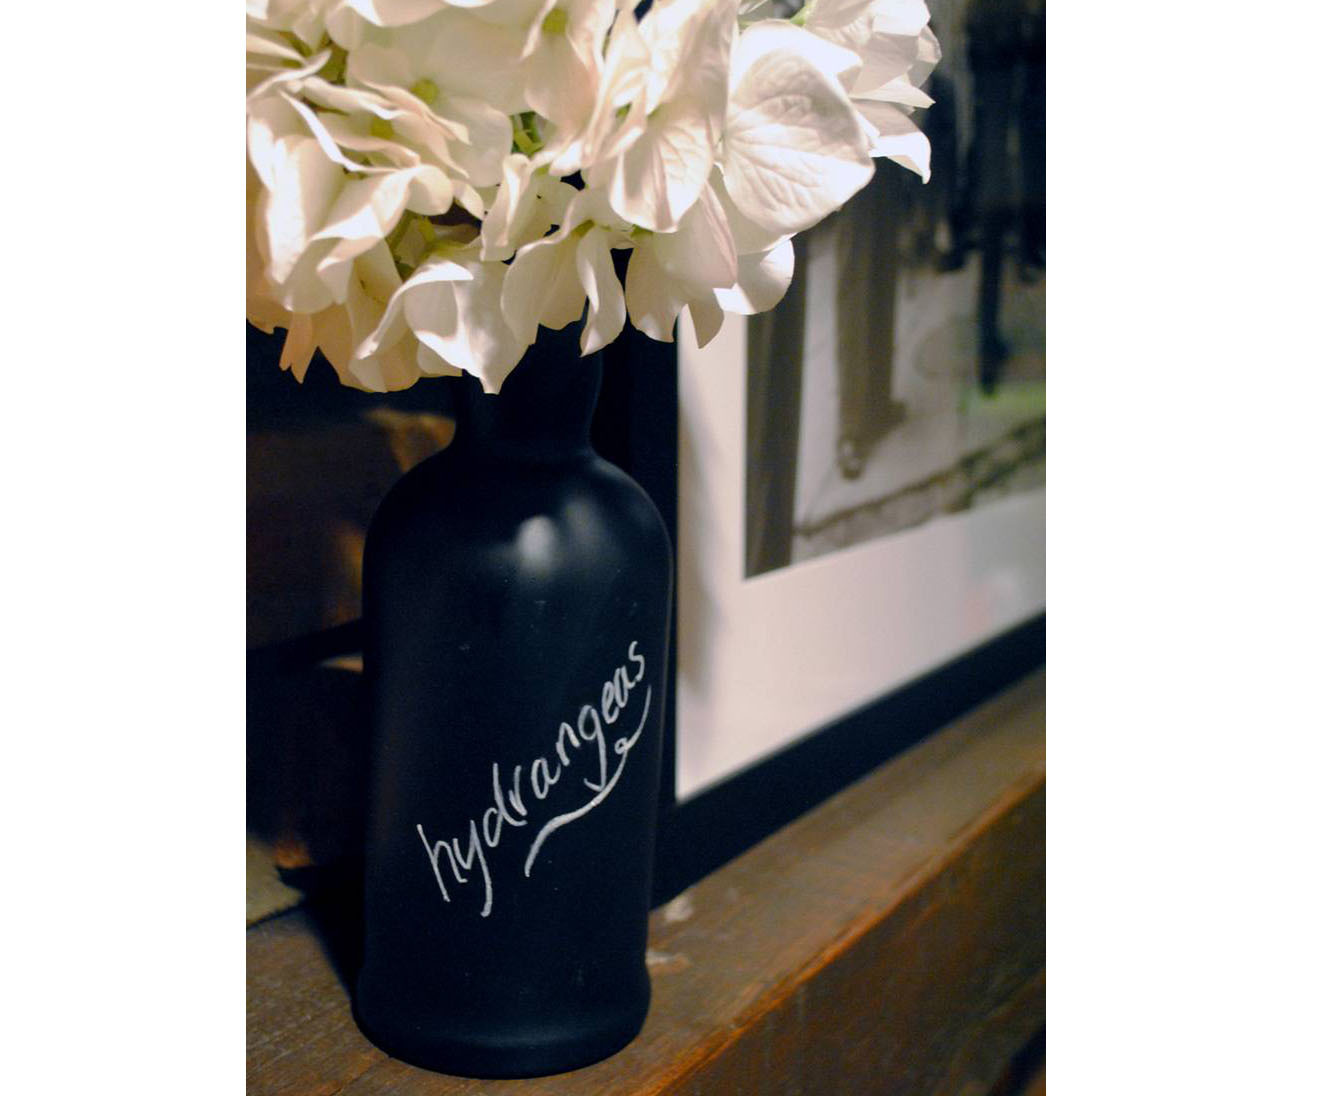 Chalkboard wine bottle vase with hydrangeas